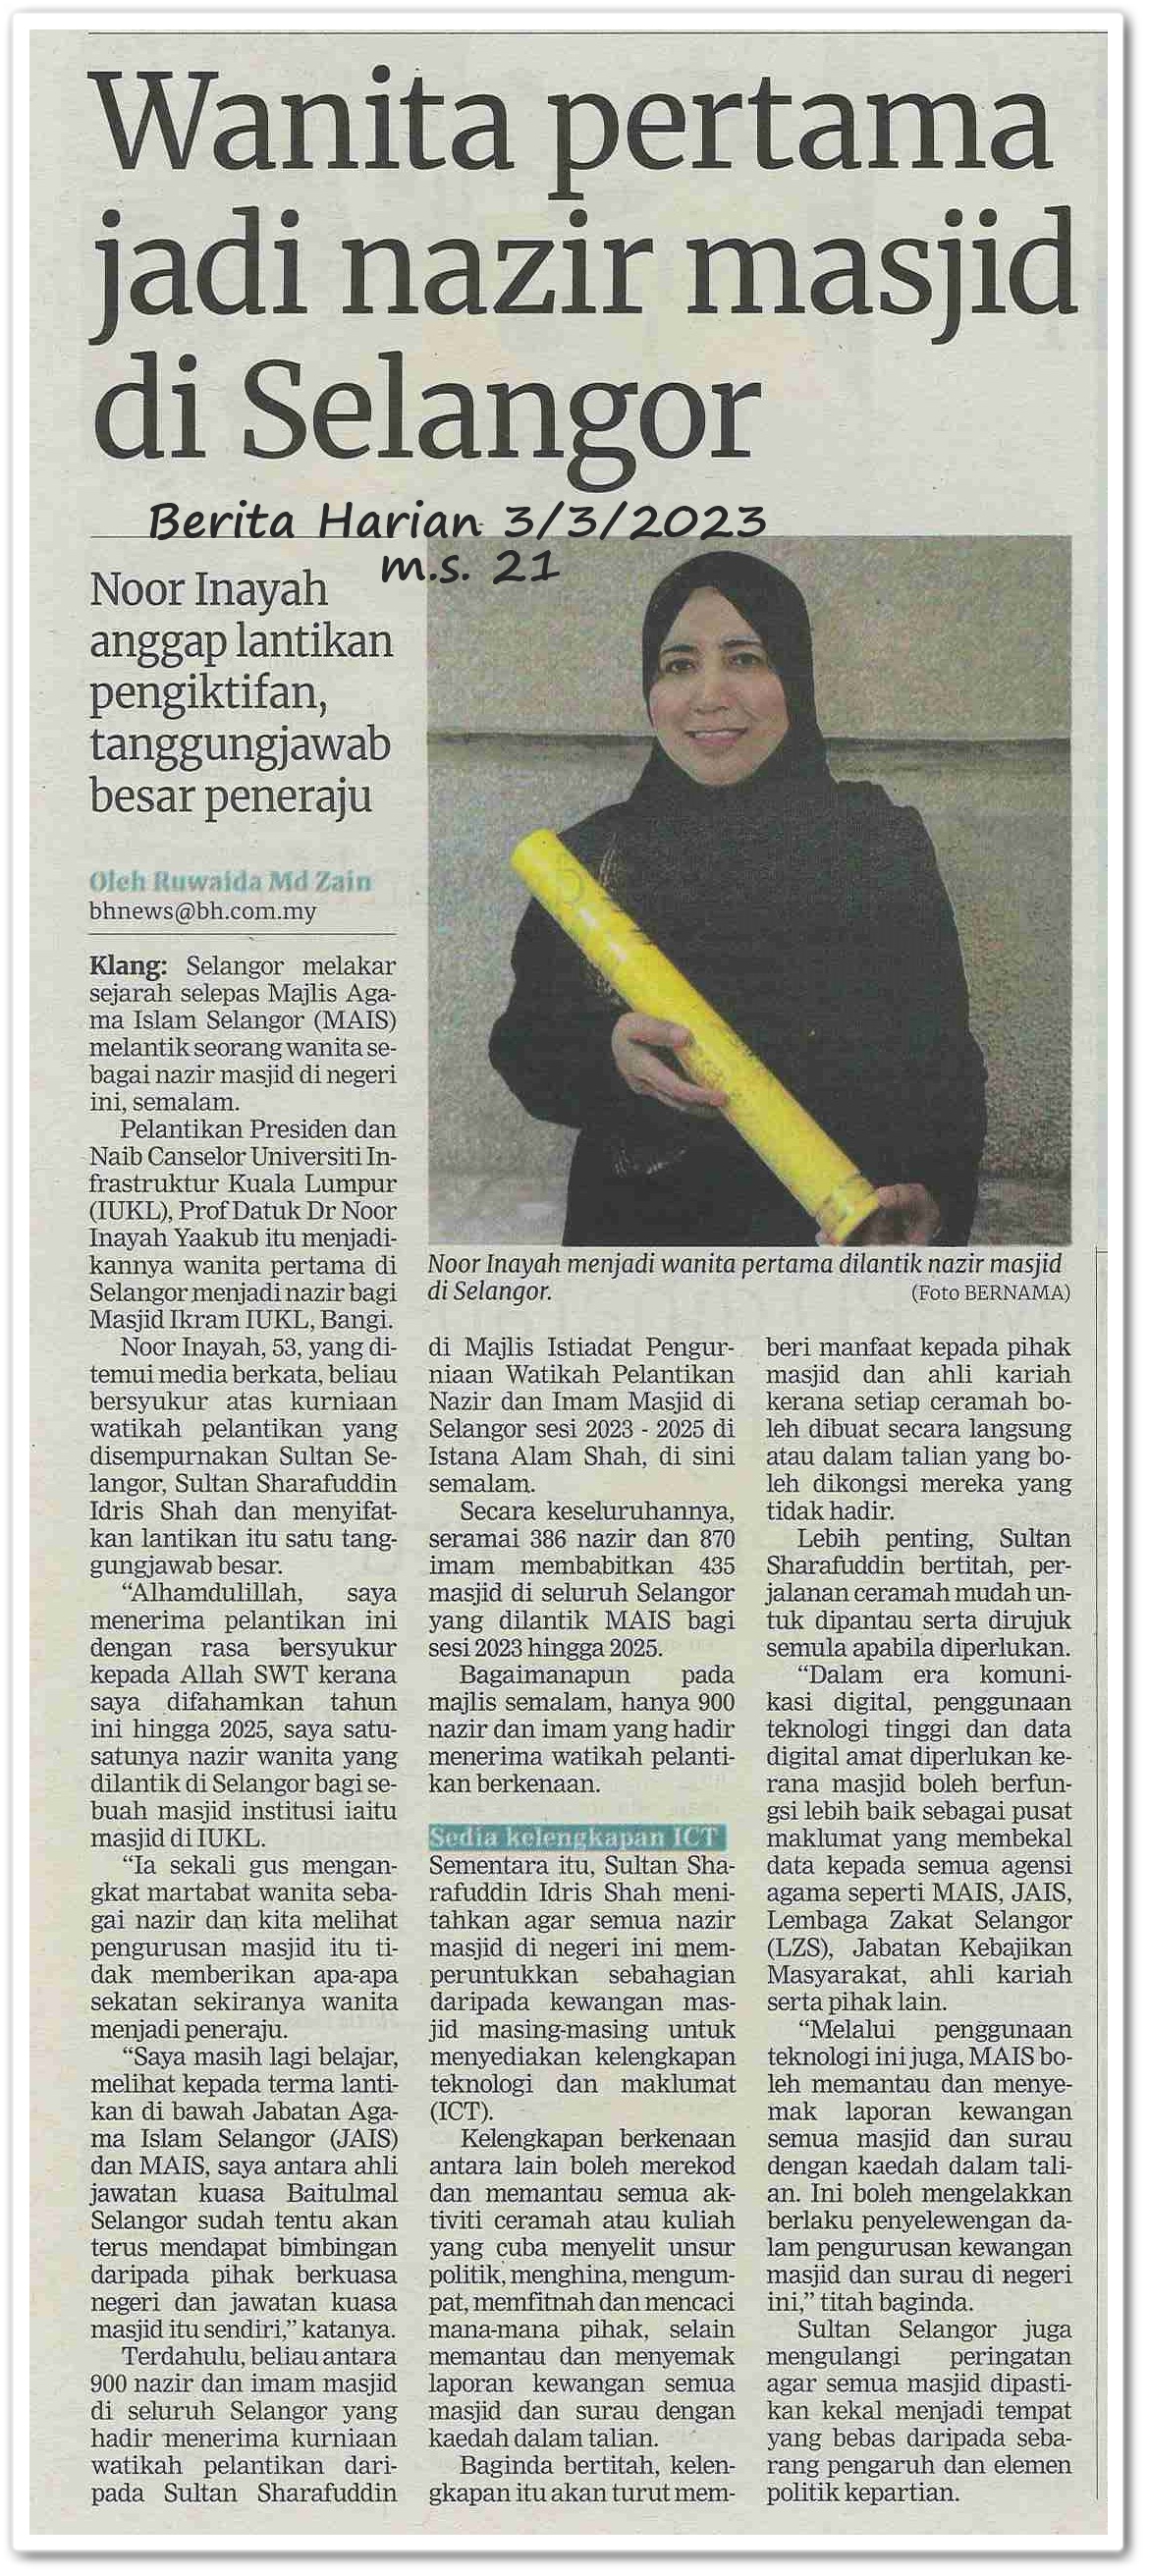 Wanita pertama jadi nazir masjid di Selangor ; Noor Inayah anggap lantikan pengiktirafan, tanggungjawab besar peneraju - Keratan akhbar Berita Harian 3 Mac 2023